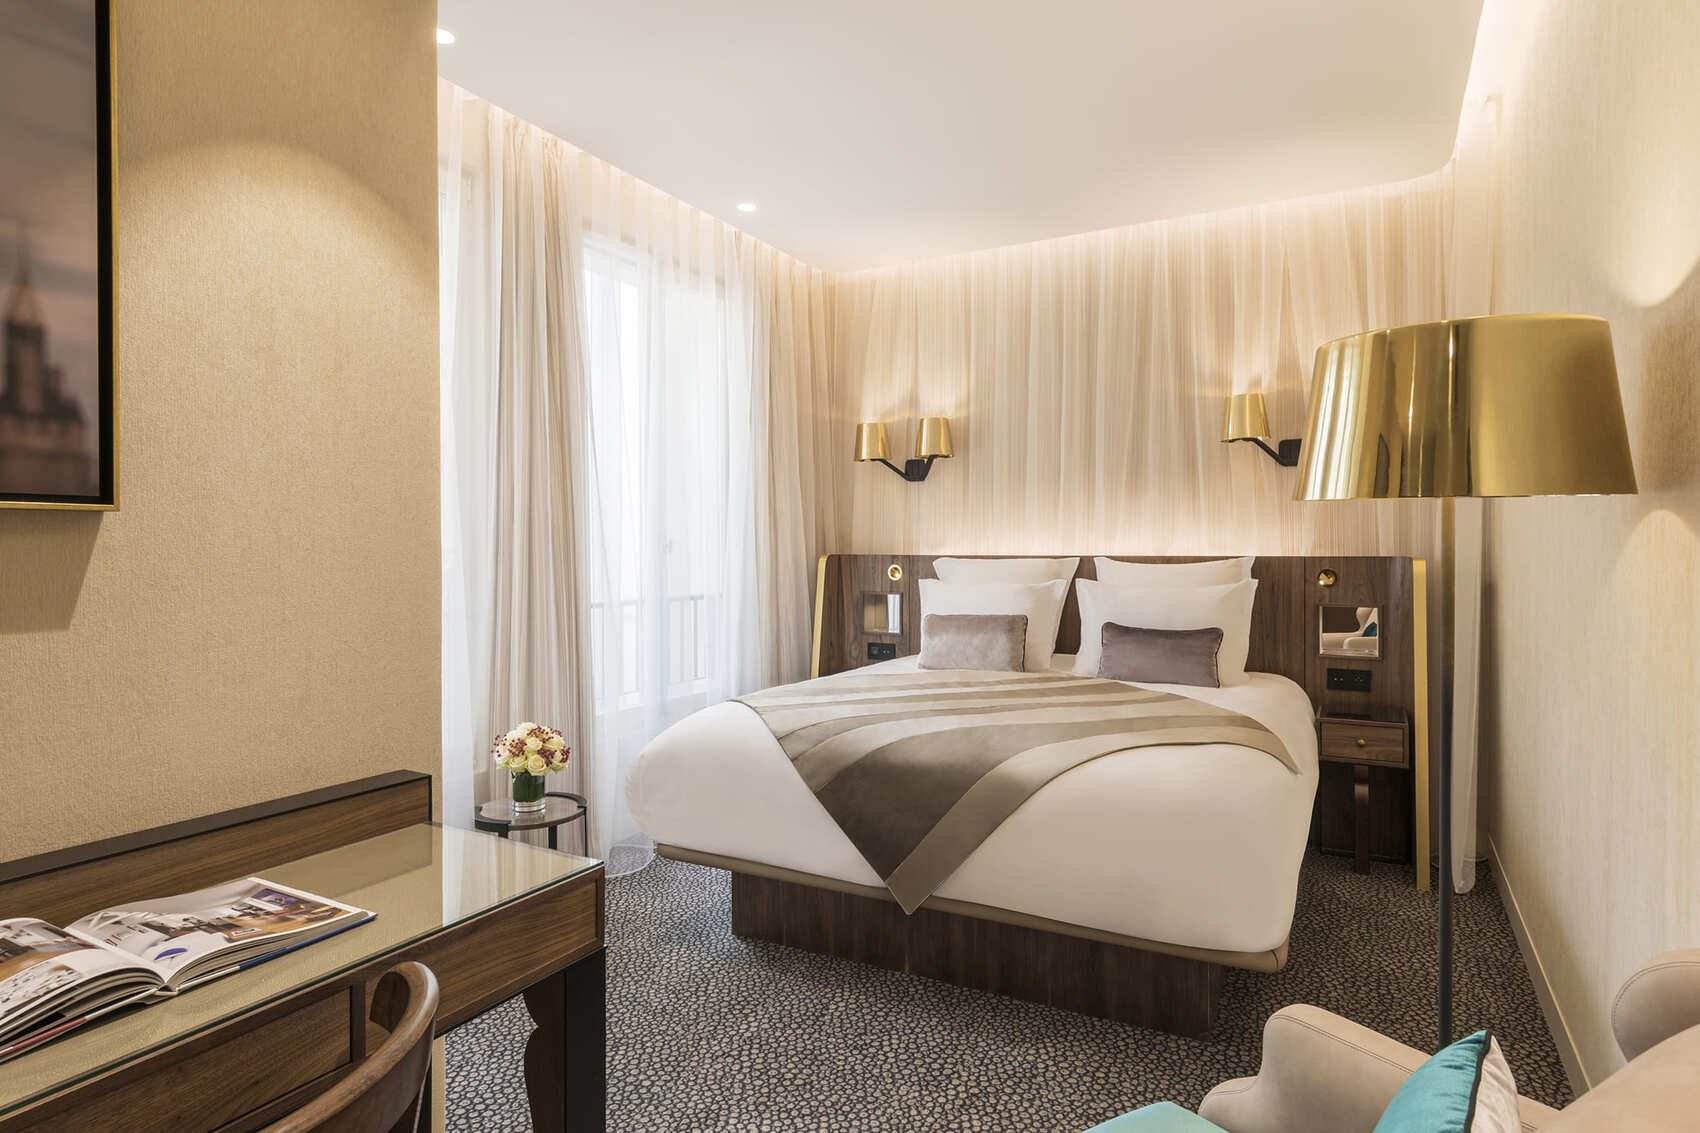 Luxury hotel - Maison Albar Hotels Le Pont-Neuf - 5-star - room